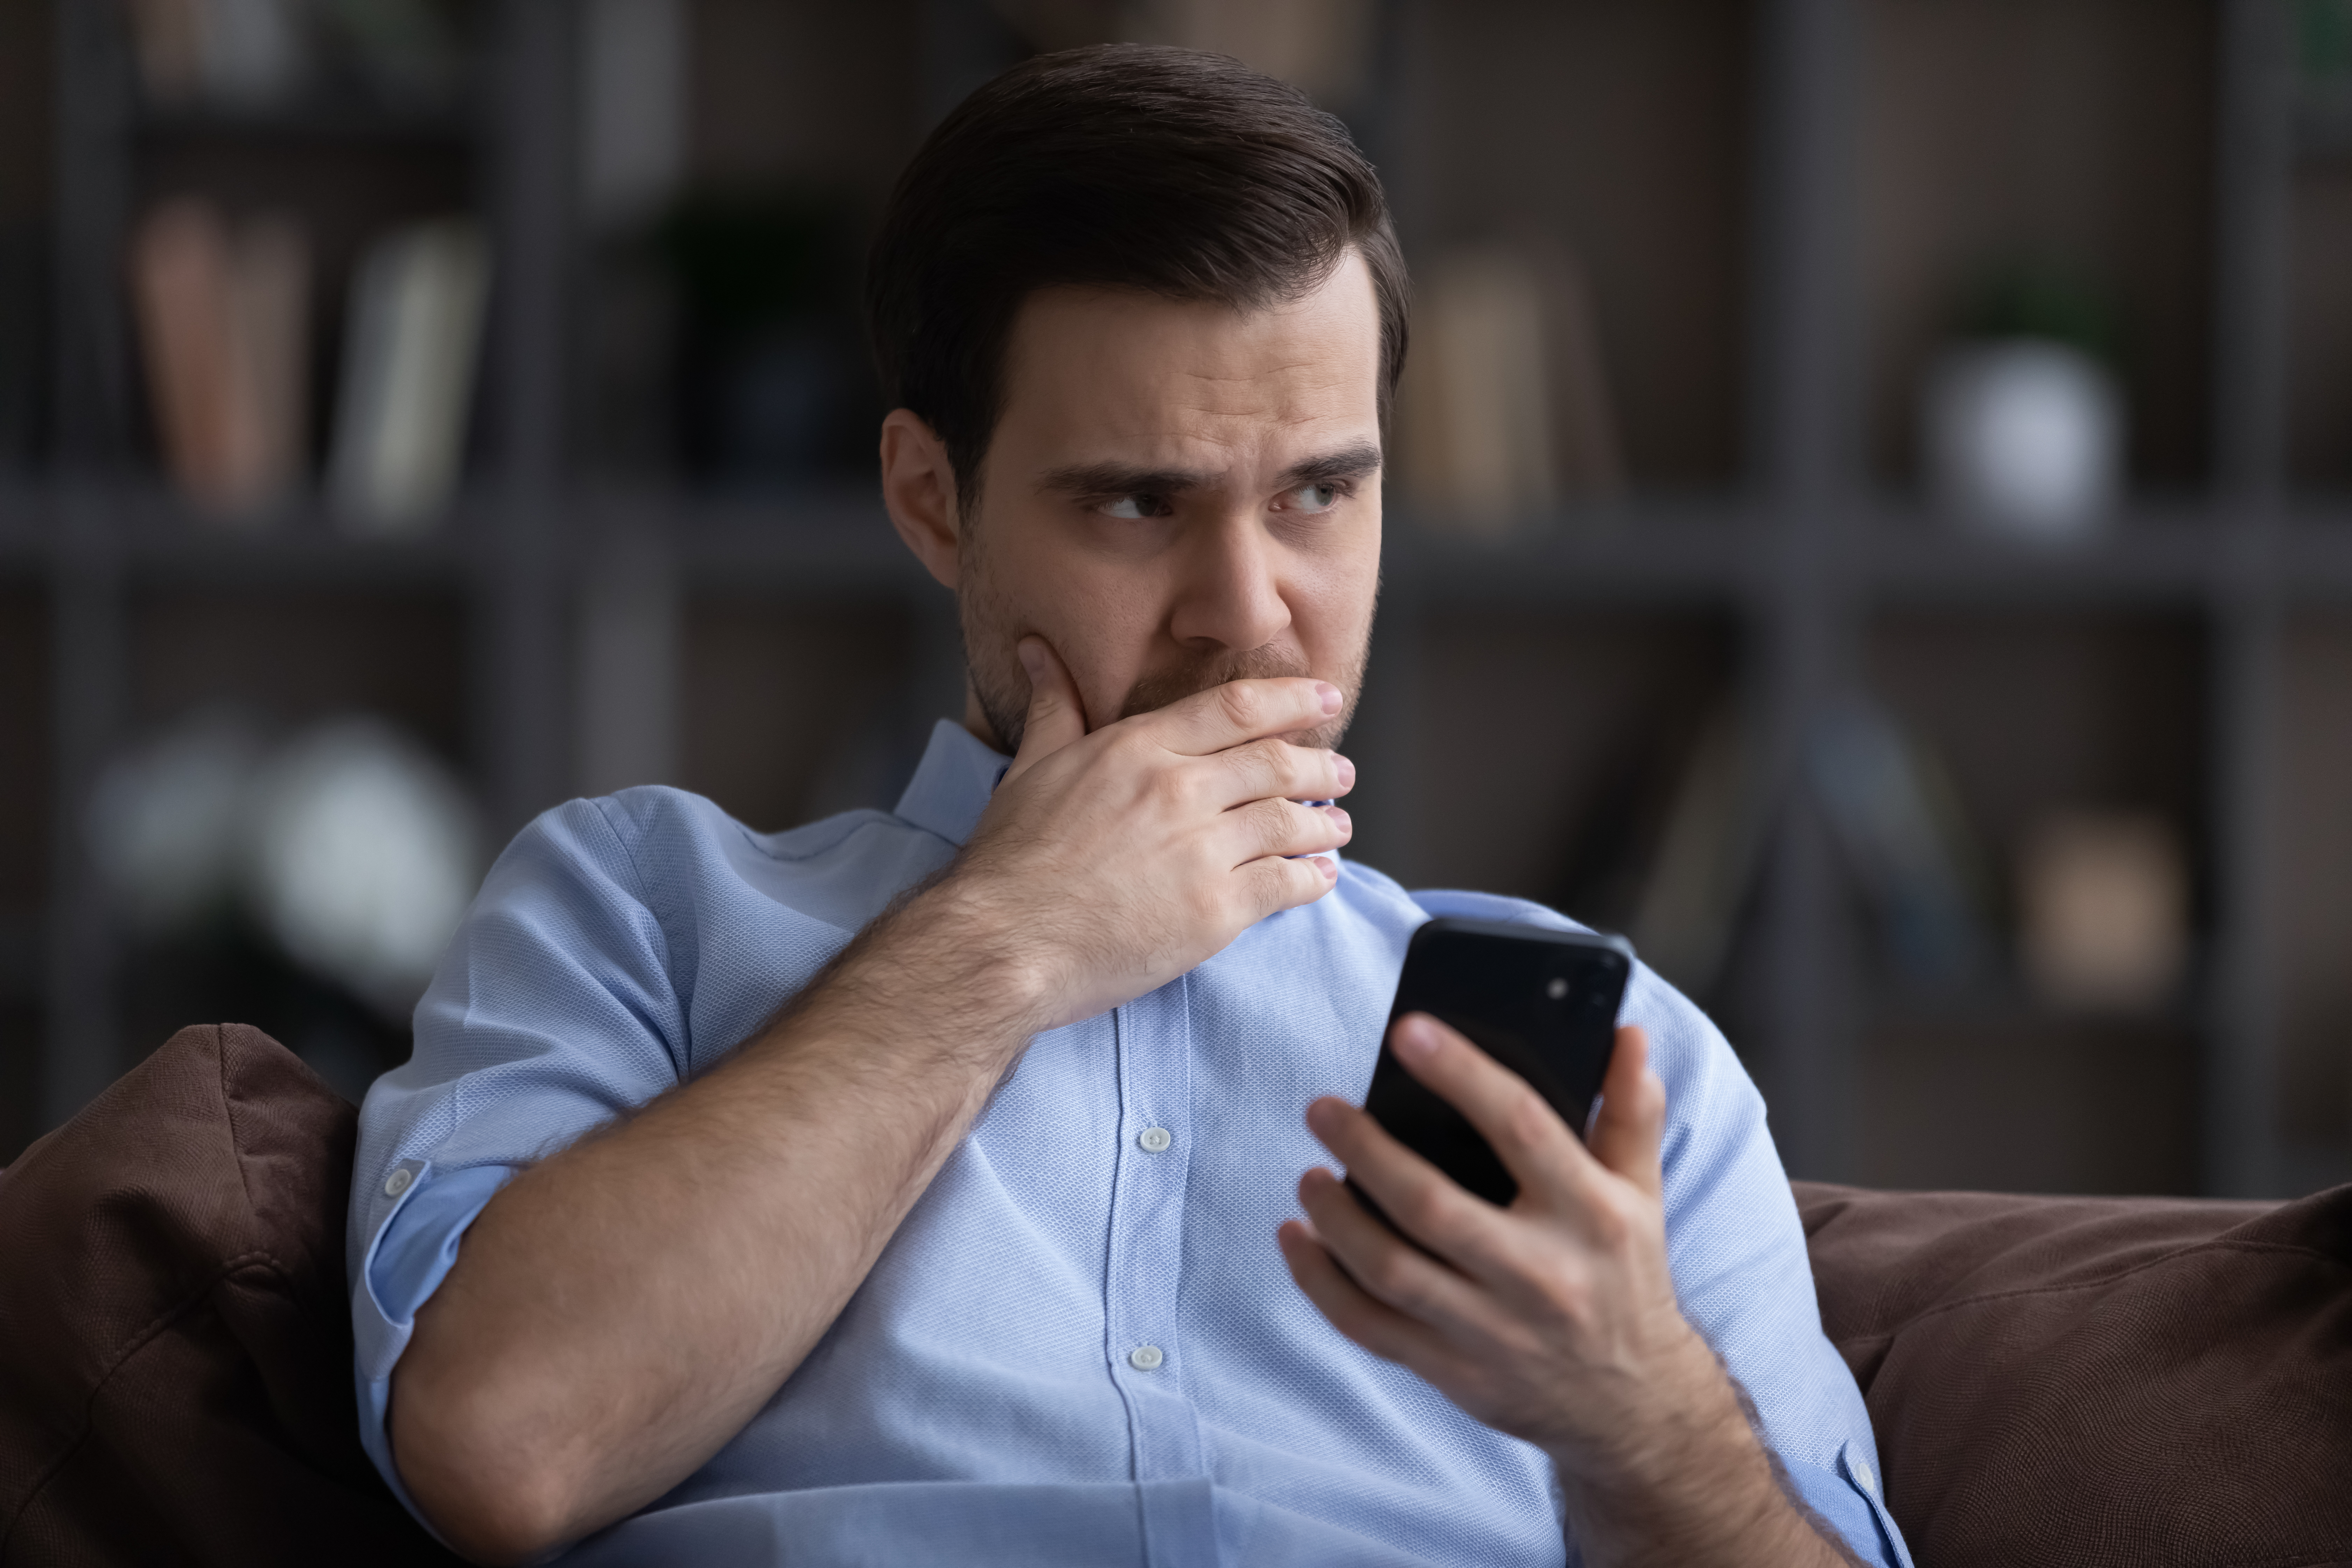 Homme angoissé ayant des doutes sur quelque chose tout en tenant son téléphone | Source : Shutterstock